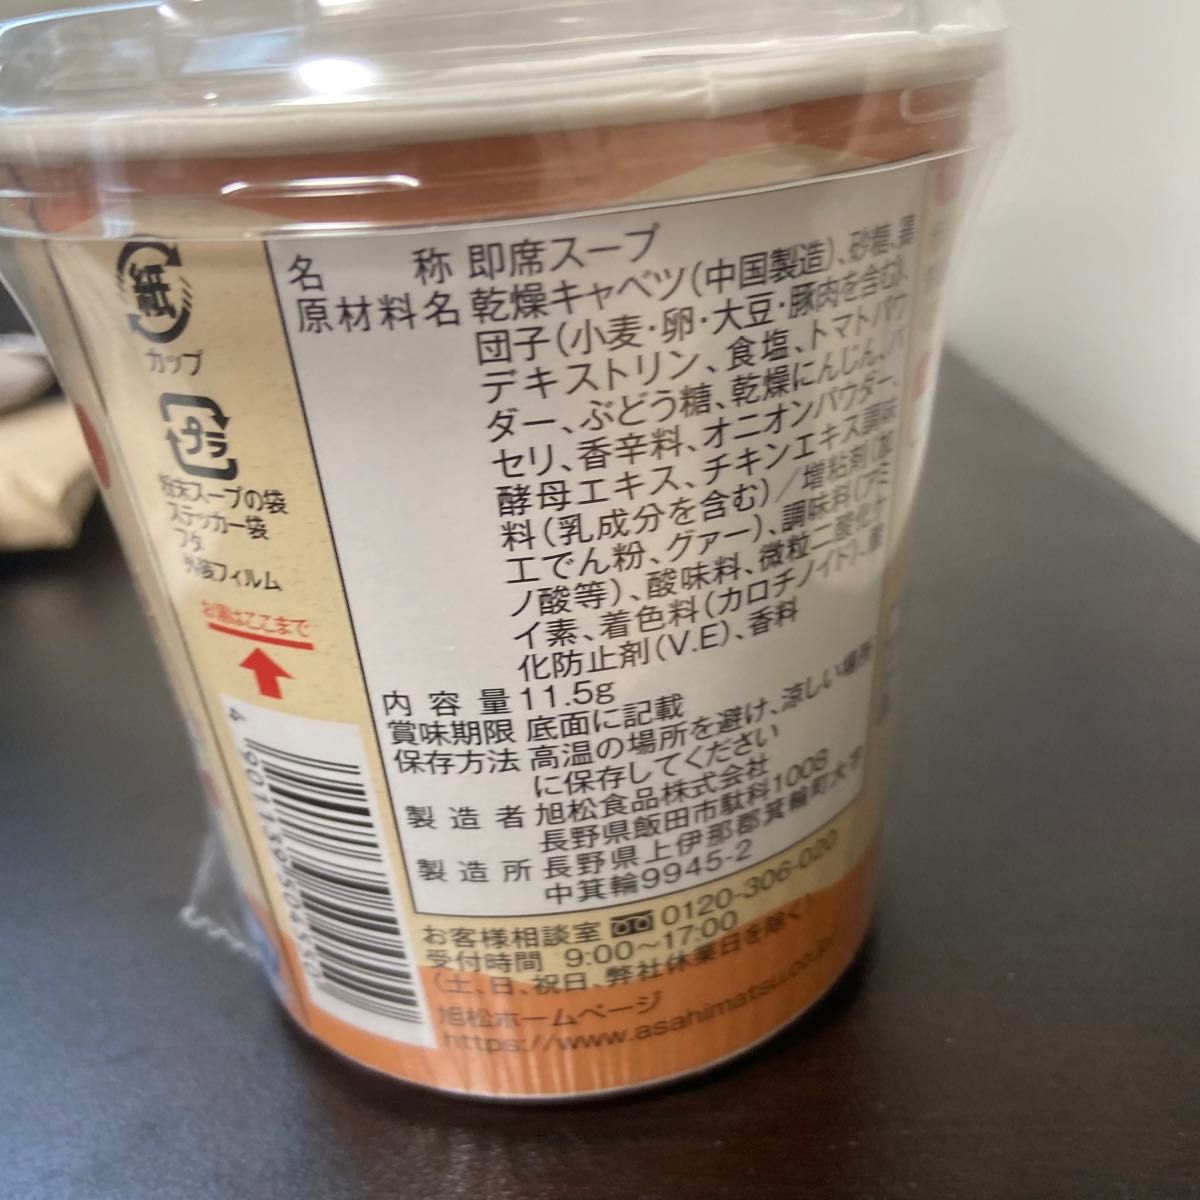 ホロホロチキントマトスープ 【ホロライブローソンコラボ限定商品】